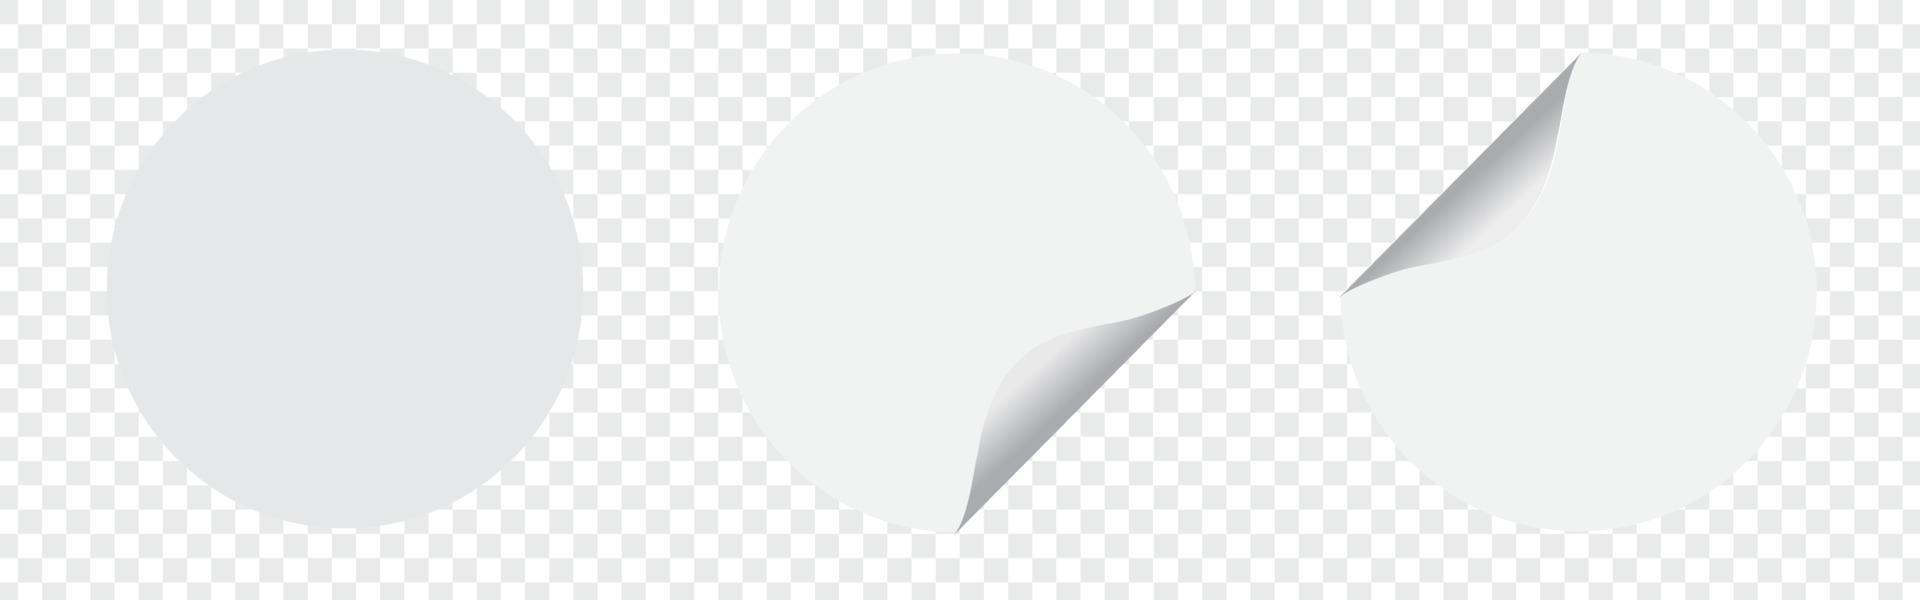 set witte ronde papieren zelfklevende stickers mockup met gebogen hoek en schaduw. witte ronde sticker op transparante achtergrond vector